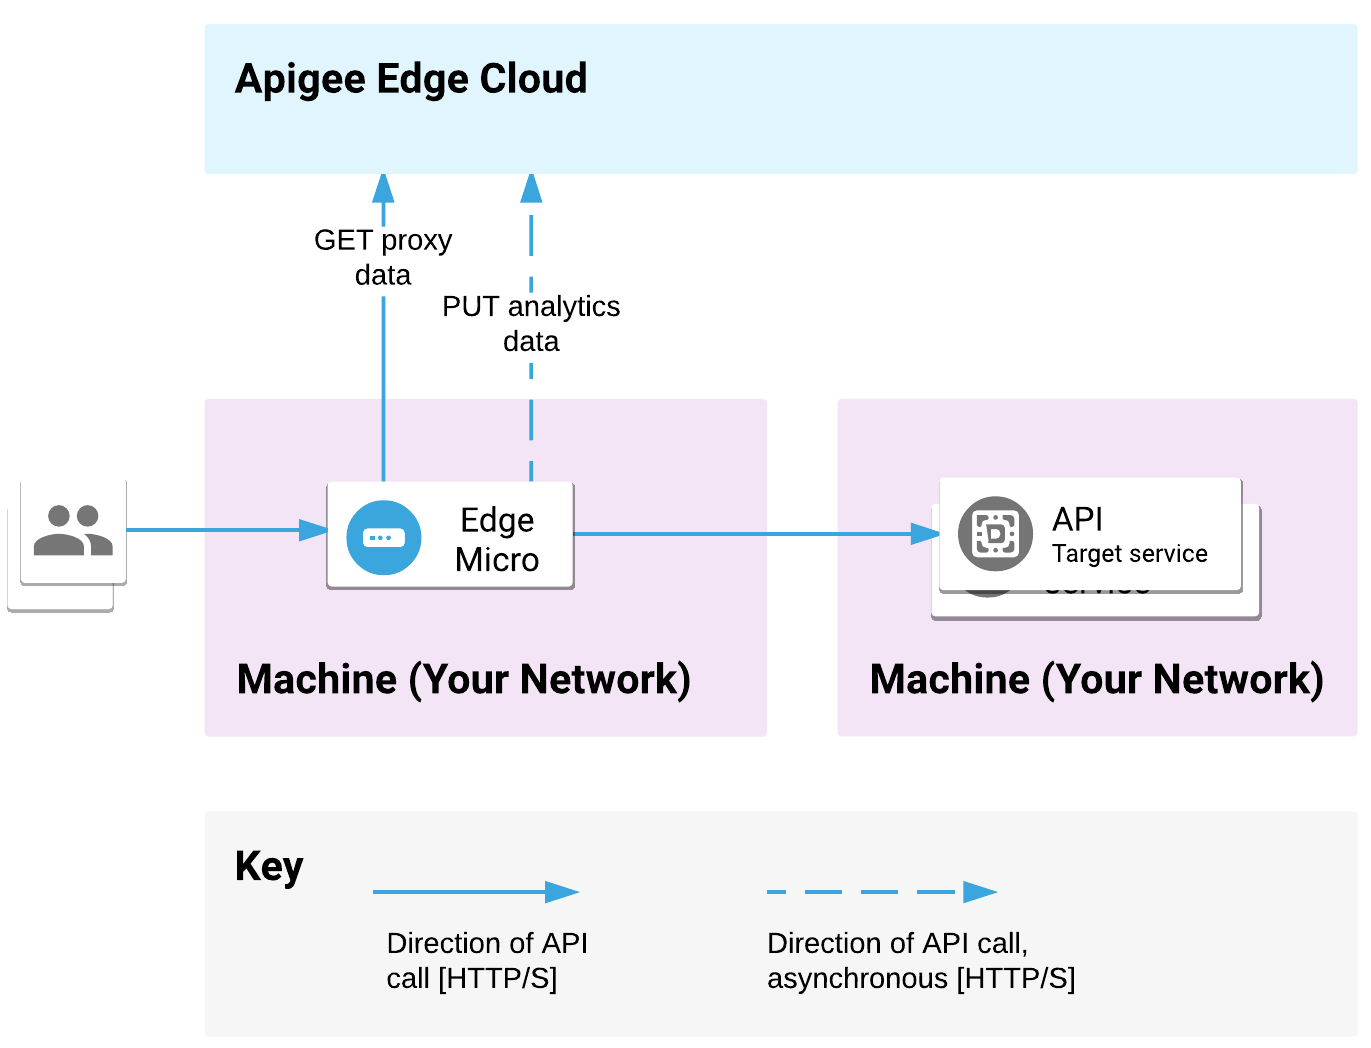 Edge Microgateway は 1 台のマシンでデプロイされ、バックエンド サービスは別の場所にデプロイされます。API リクエストは microgateway によって処理され、リクエストがバックエンド ターゲットに送信されます。Microgateway は、Apigee Edge Cloud とプロキシと分析のデータをやり取りします。